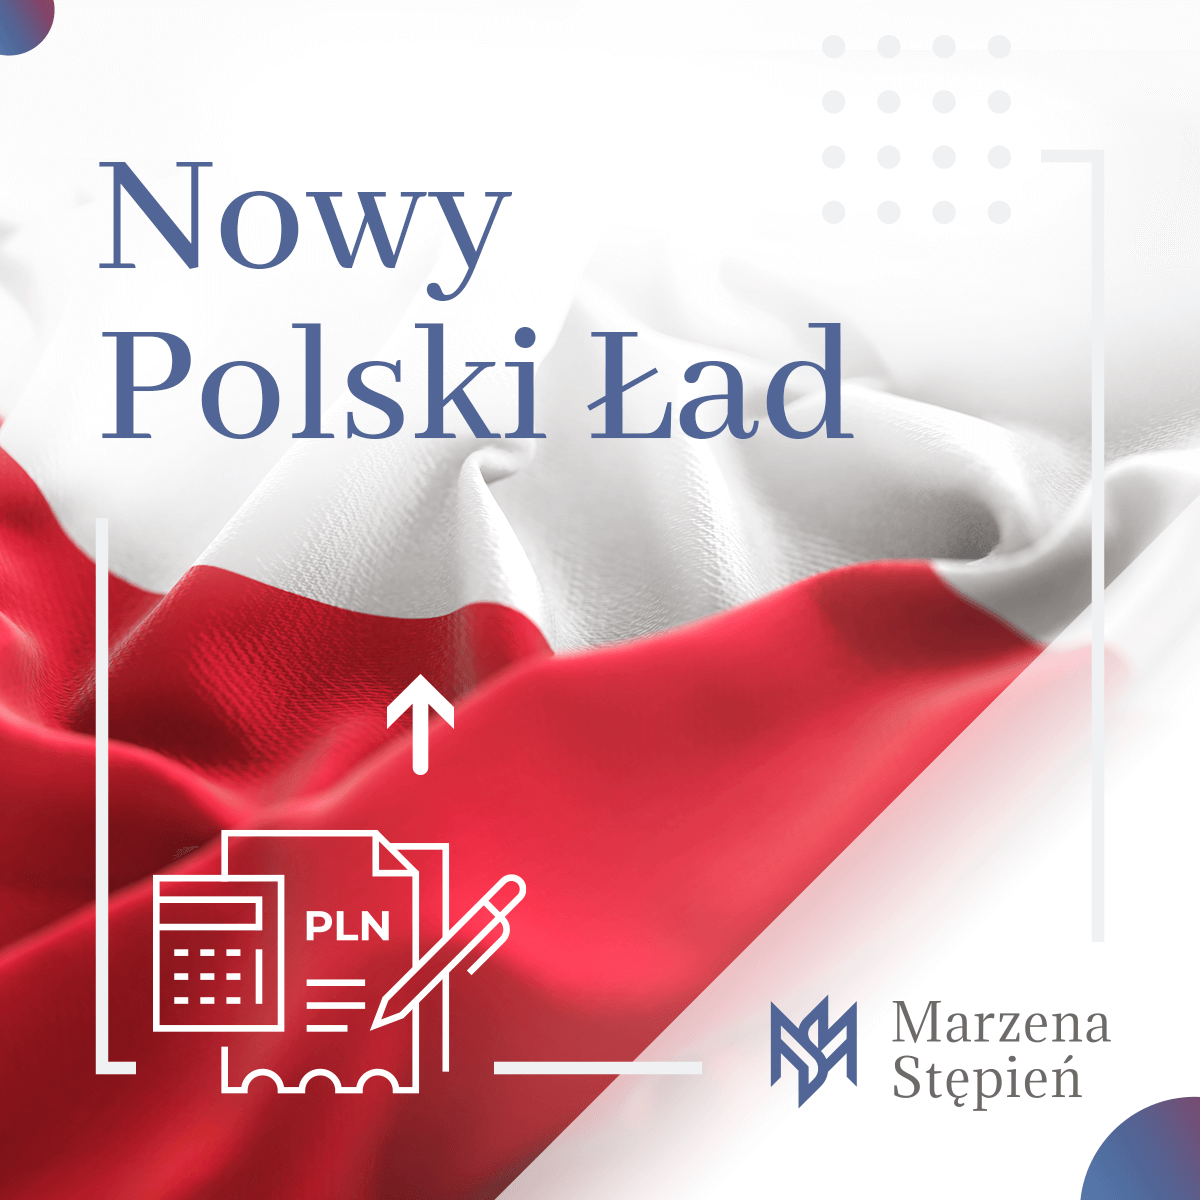 Nowy Polski Ład 26.05.2021.png